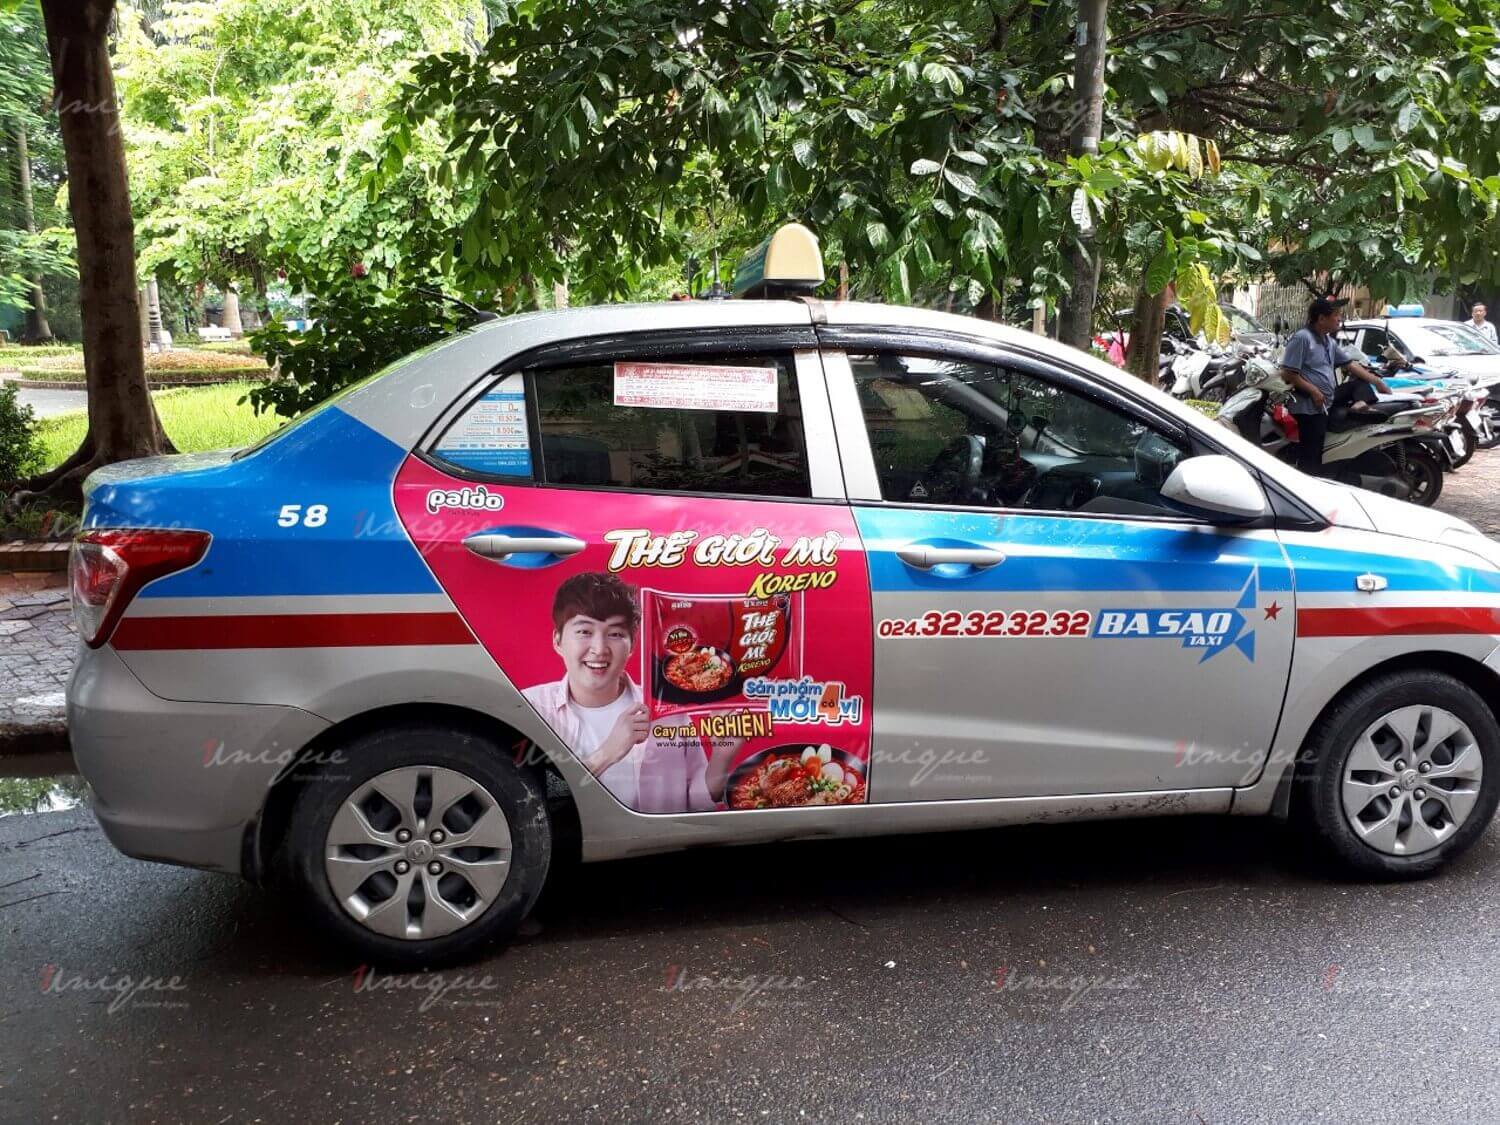 Chiến dịch quảng cáo trên taxi của Thế giới mì Koreno